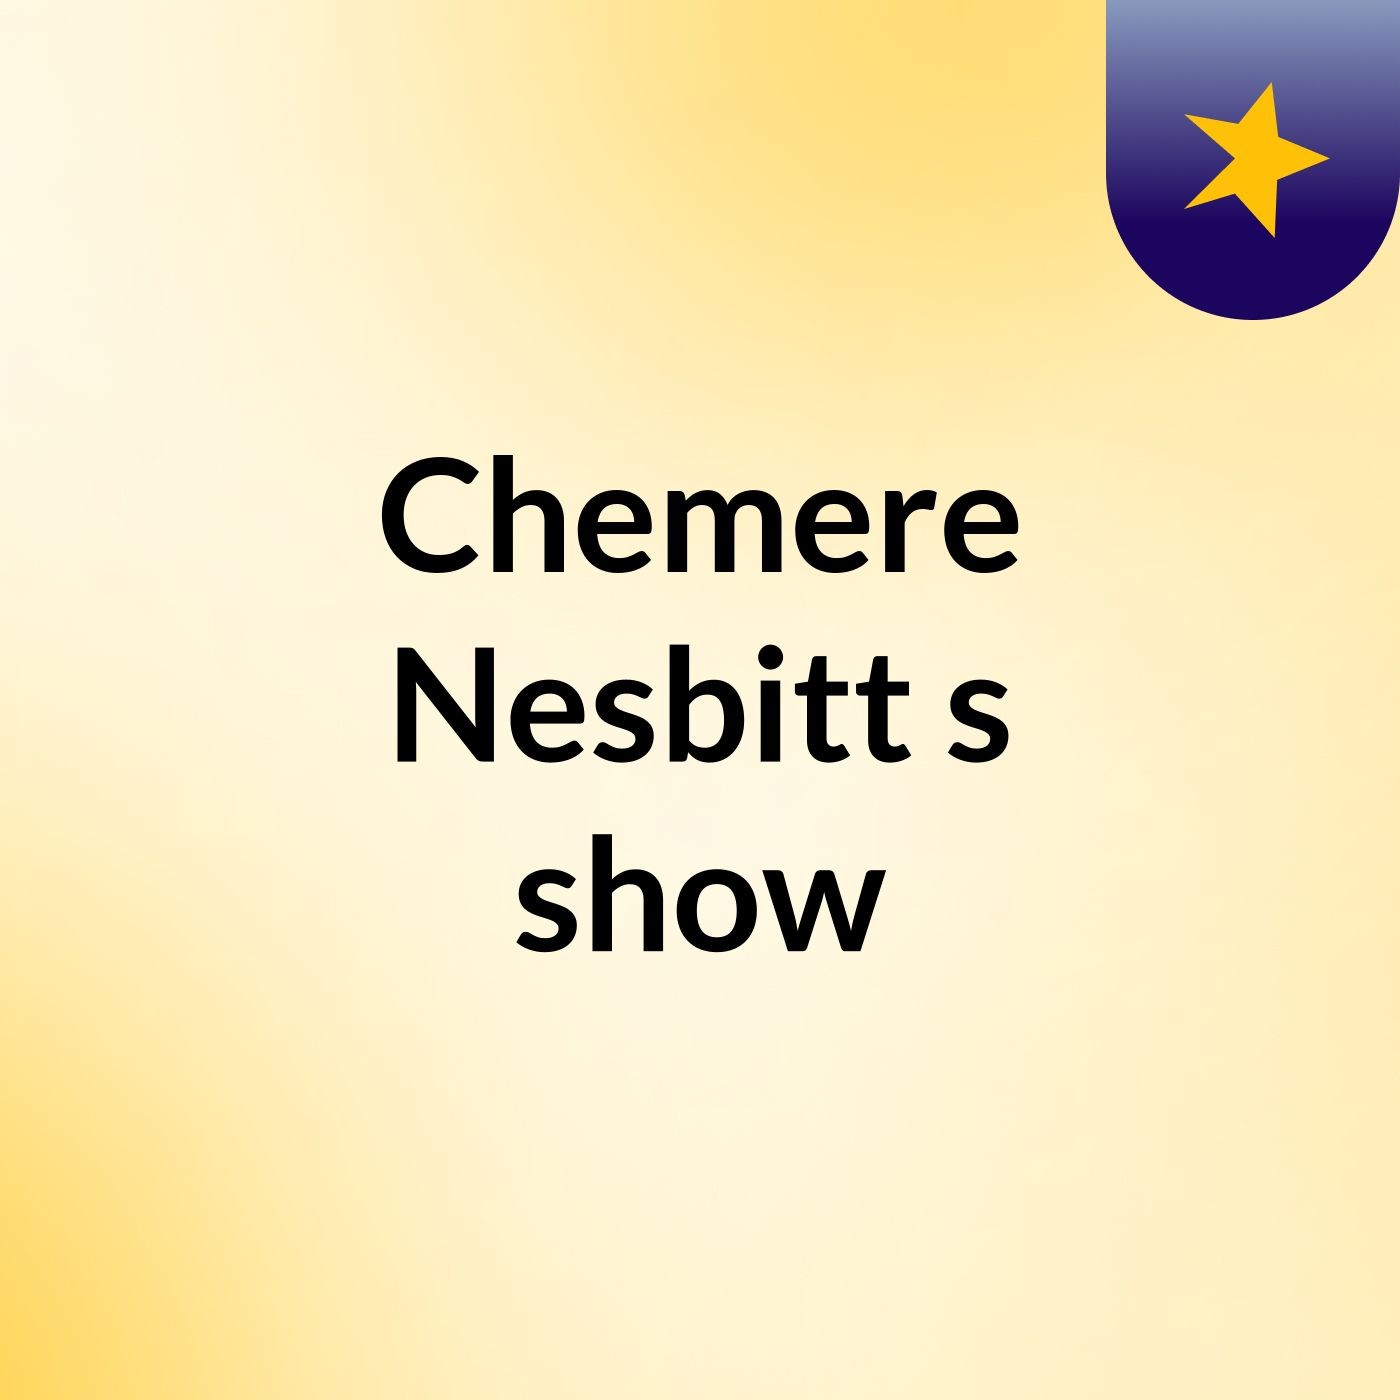 Episode 2 - Chemere Nesbitt's show